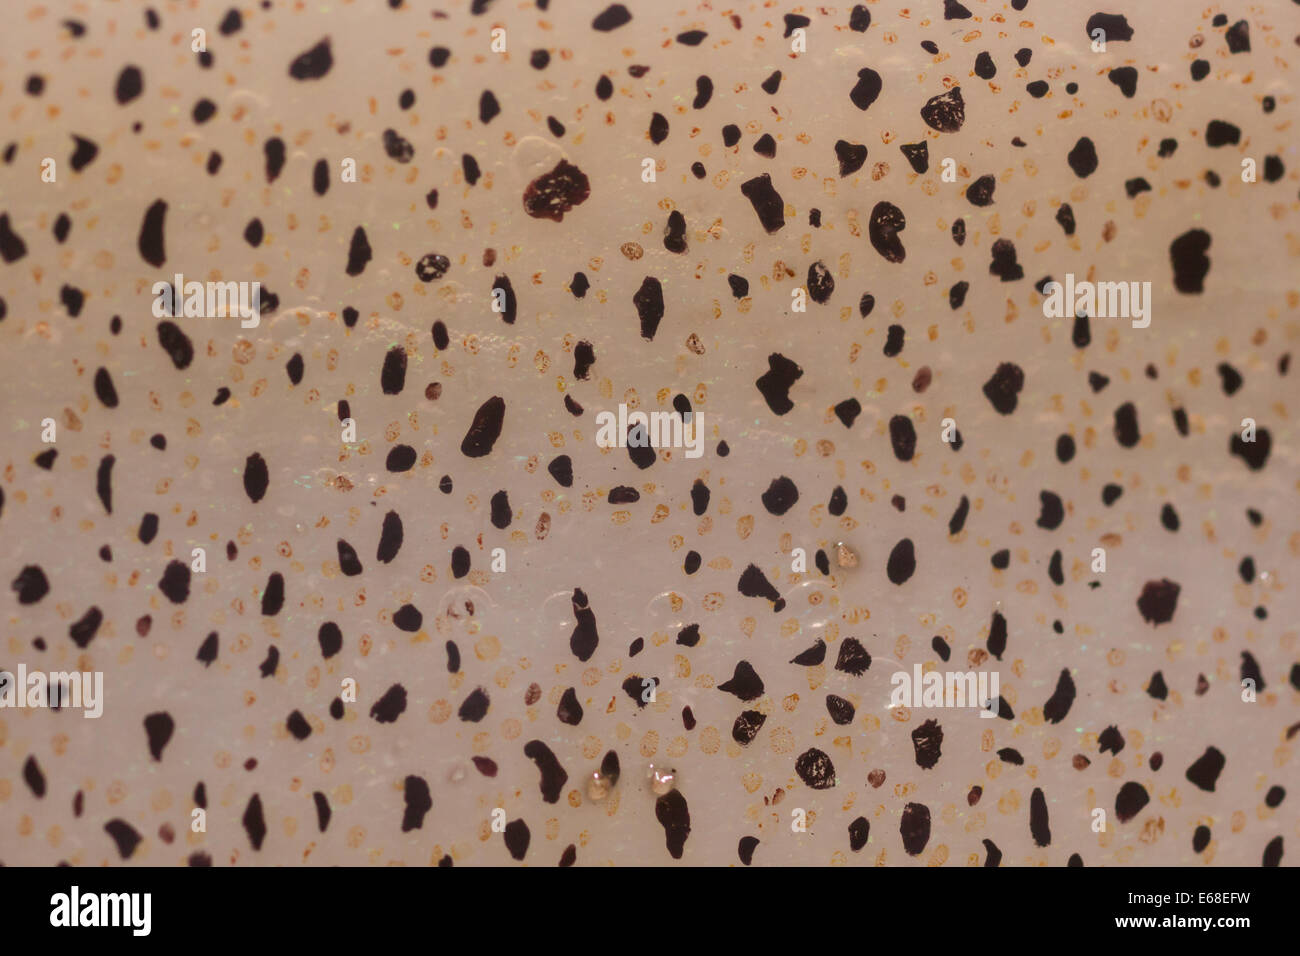 Calmar Loligo vulgaris européenne, l'chromatophores qui sont présents dans la peau de ces calmars qui sont utilisées pour l'affichage. Banque D'Images